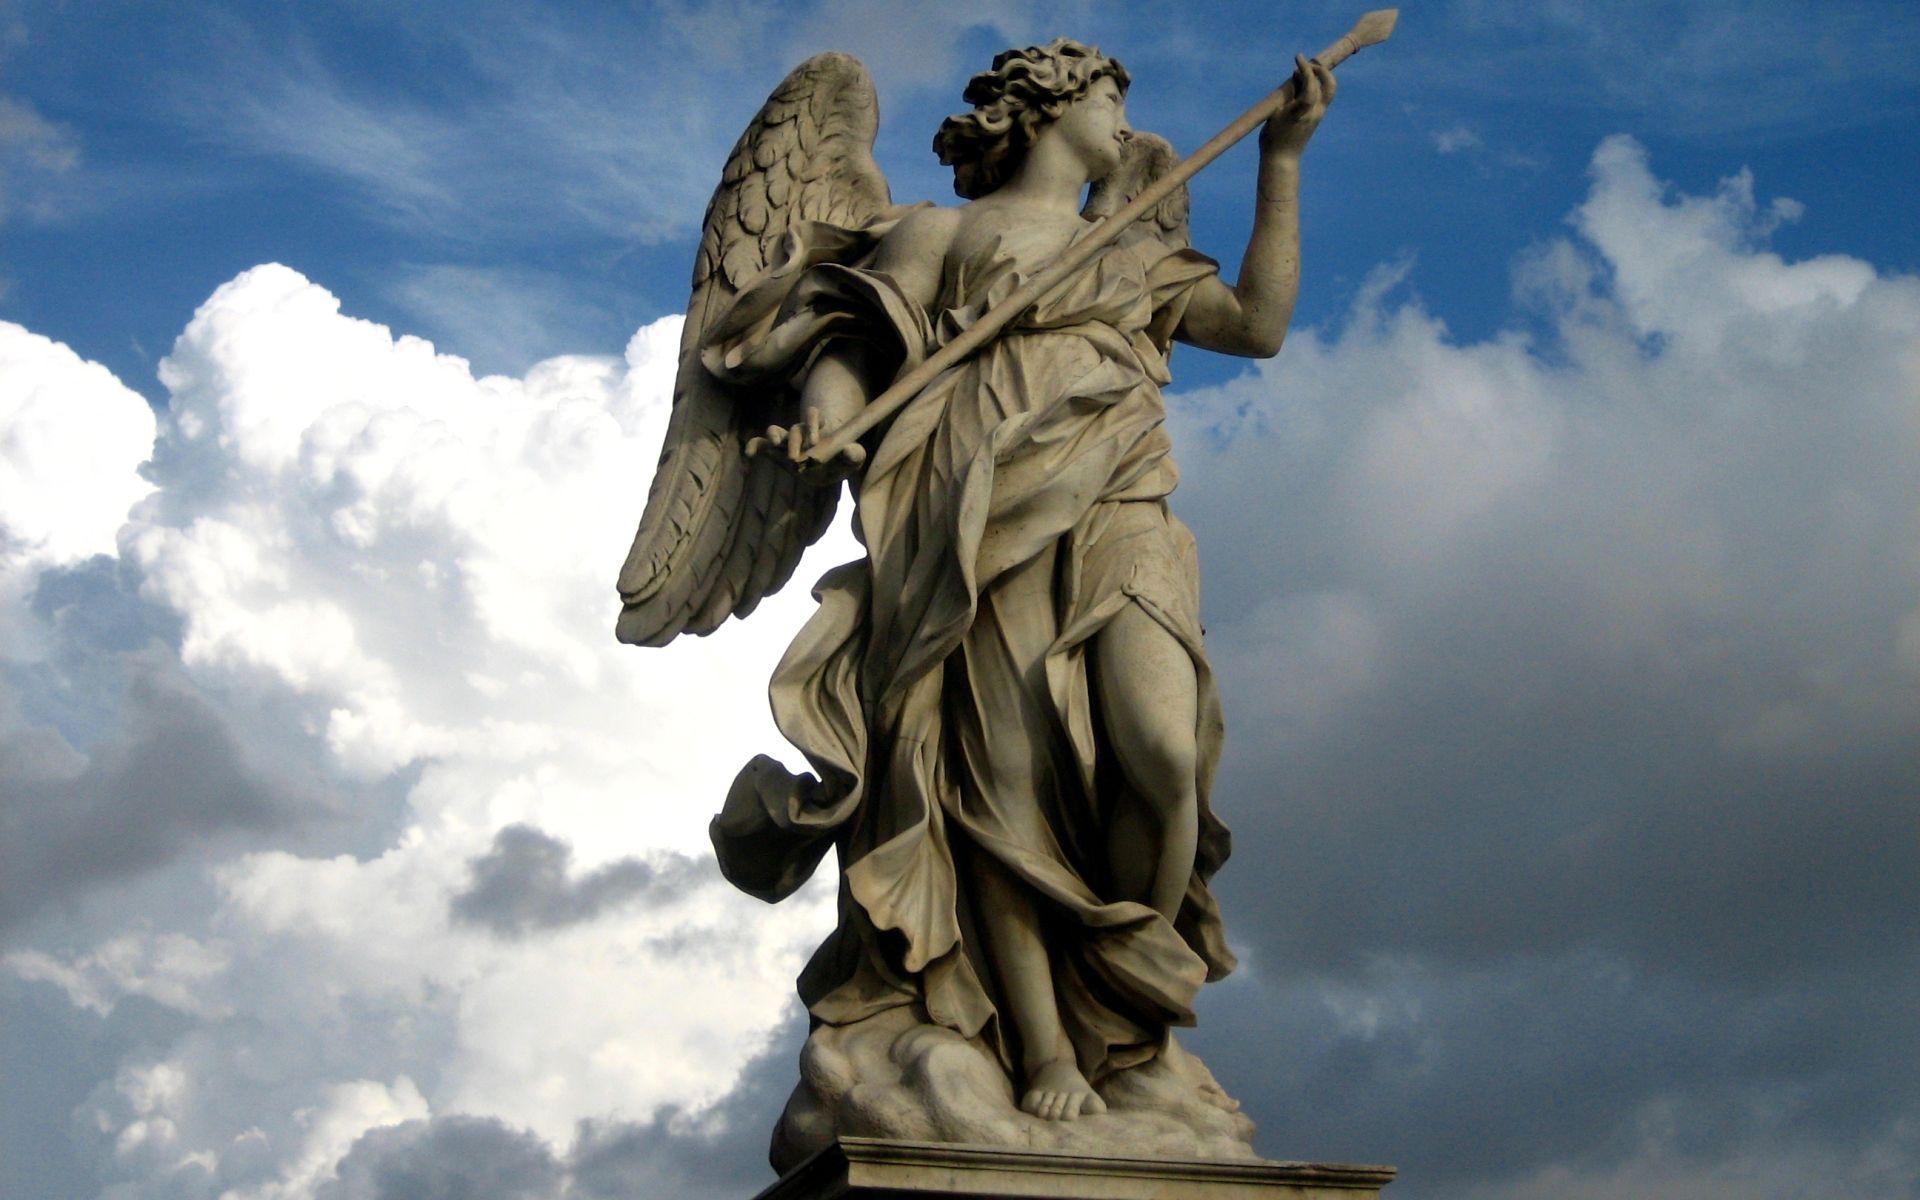 خفن ترین و حرفه ای ترین مجسمه سنگی طرح فرشته بالدار 